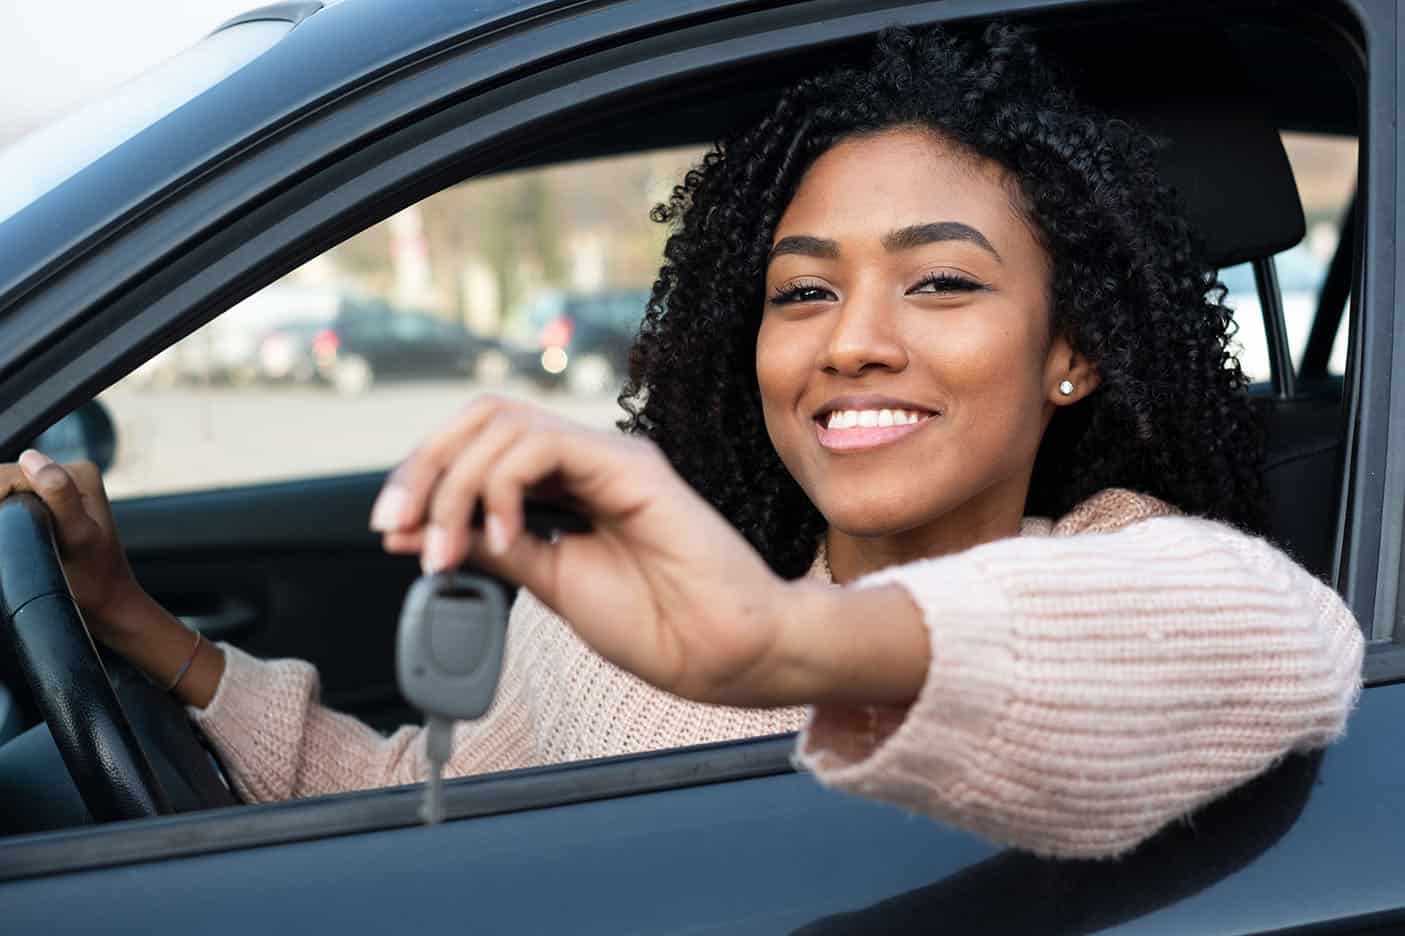 Jeune conducteur heureux propriétaire d’un permis de conduire et d’une nouvelle voiture, il est temps de souscrire une assurance auto.